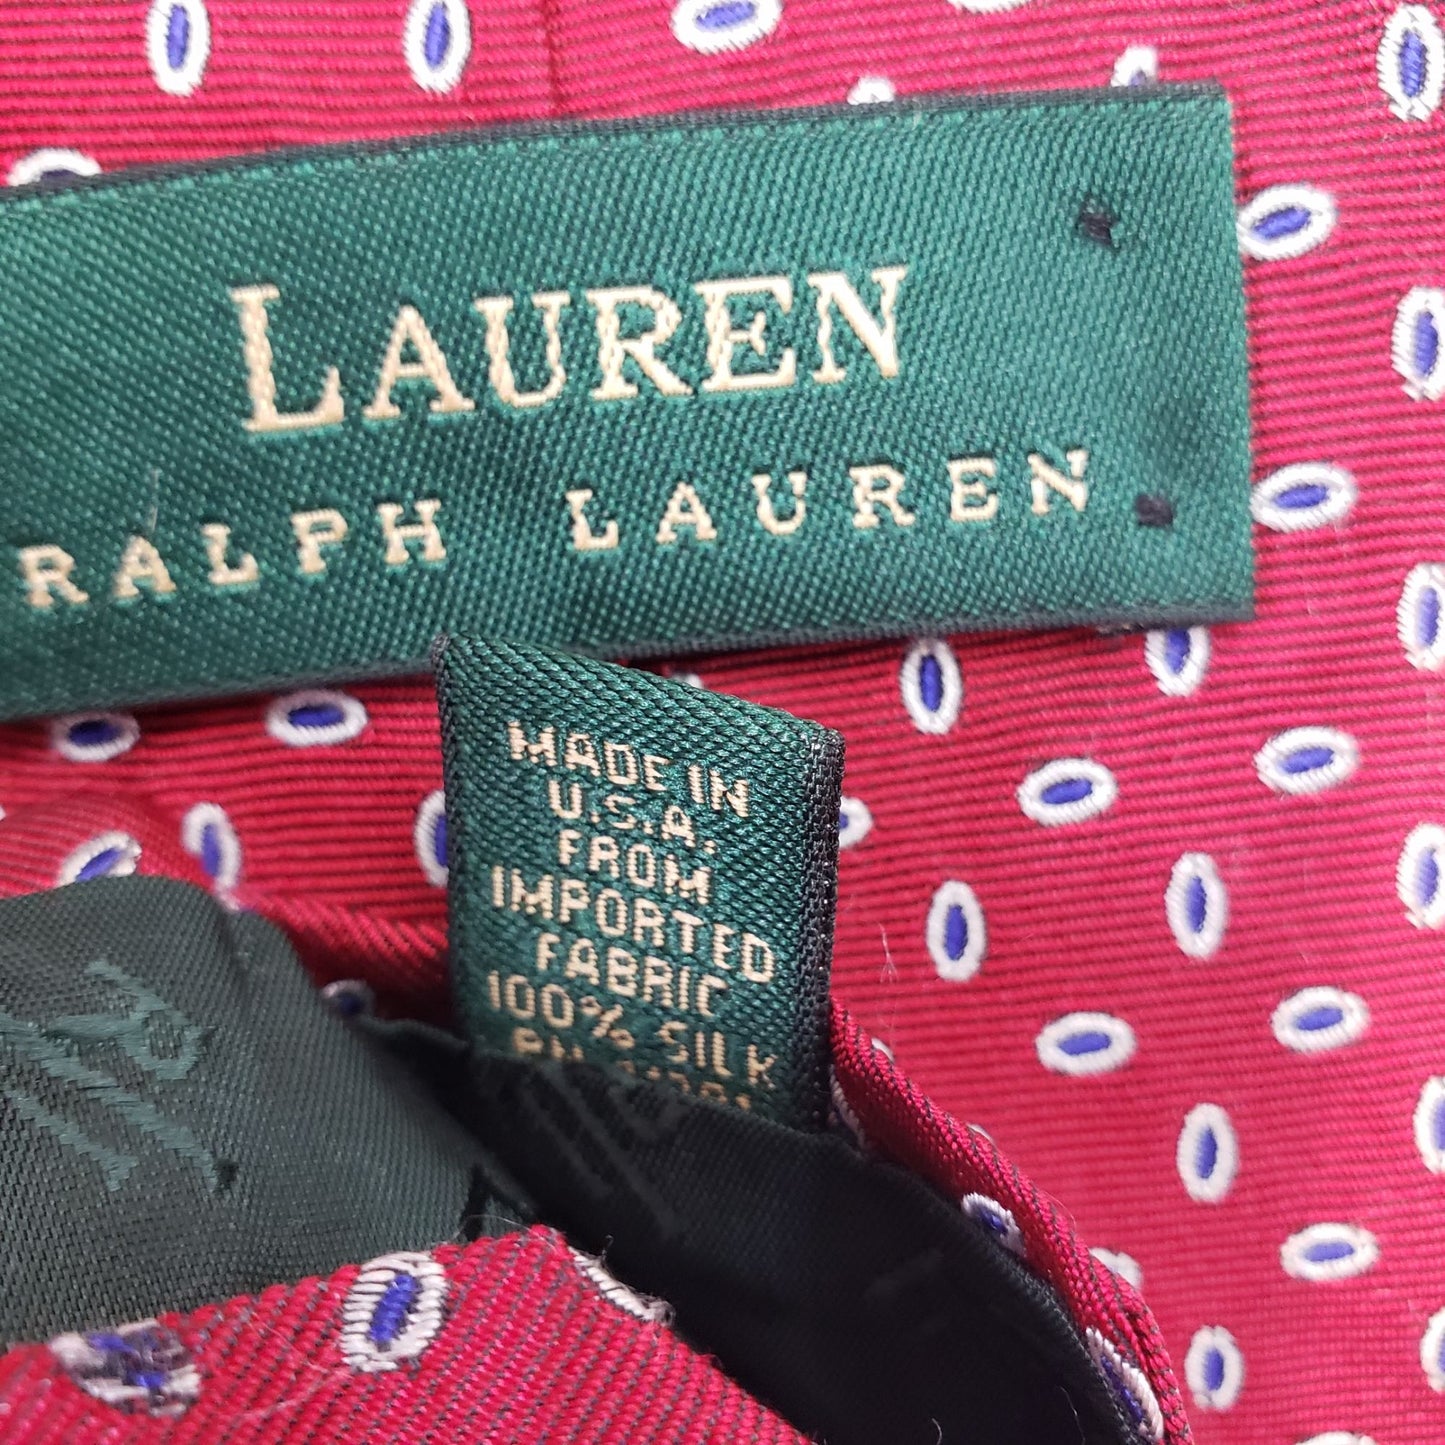 Bundle of Brooks Brothers & Lauren Ralph Lauren Silk Ties